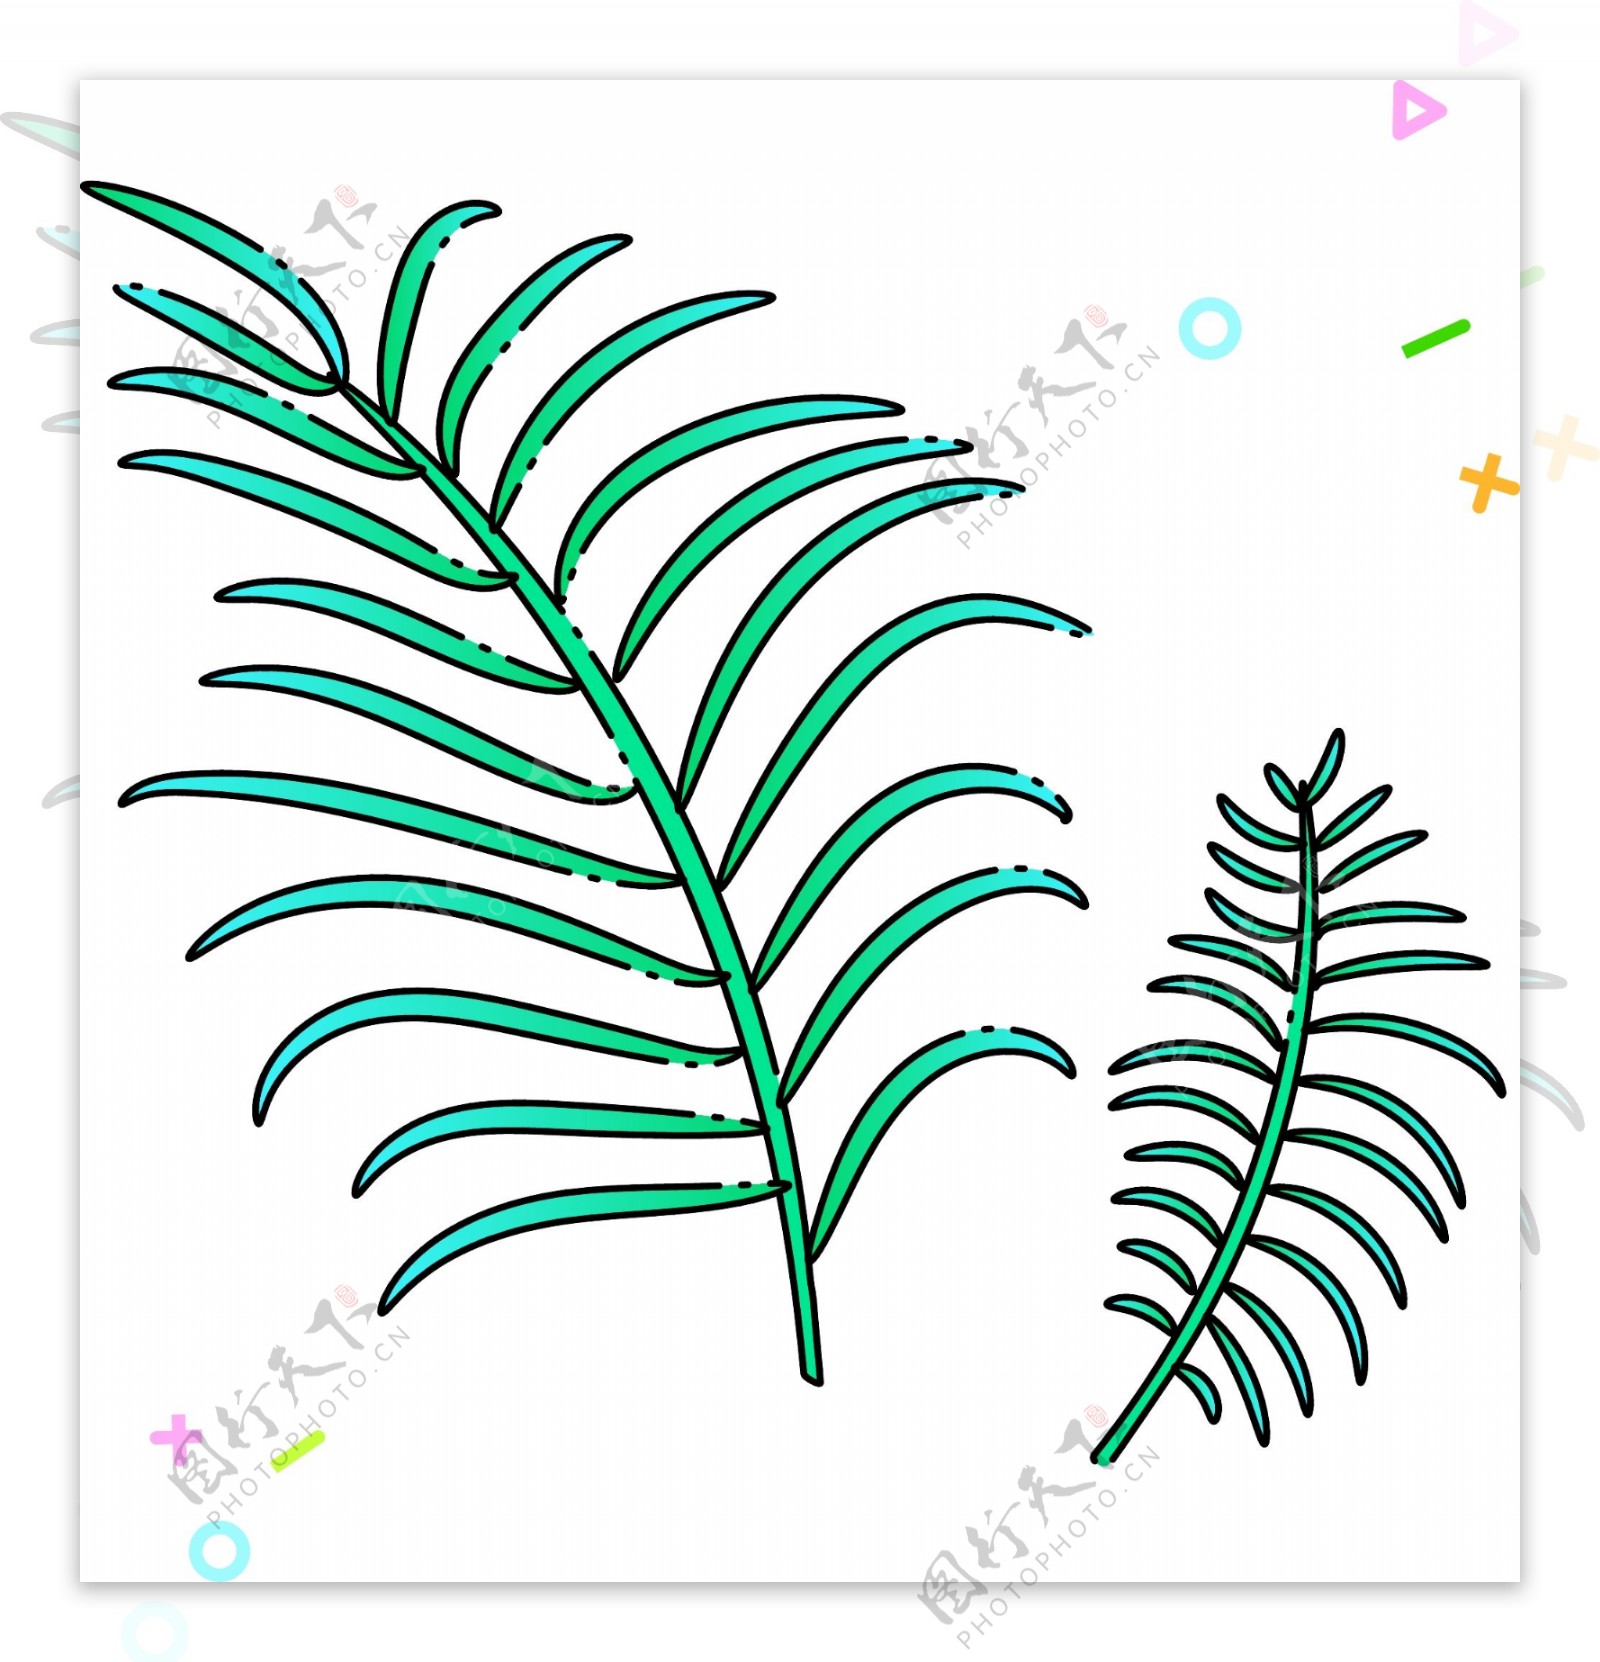 绿色枝条热带植物